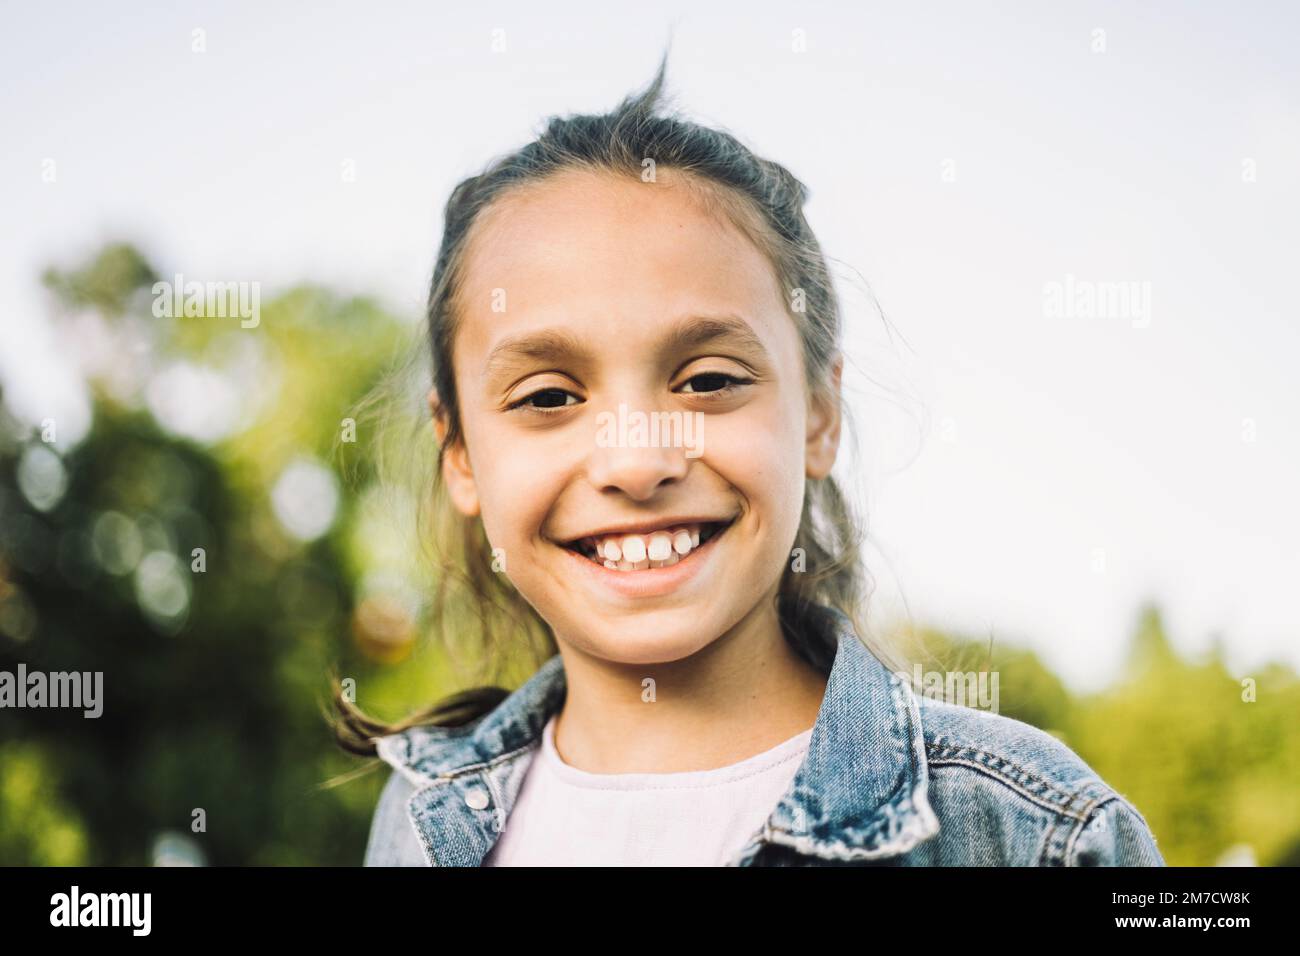 Retrato de chica feliz con sonrisa dentada Foto de stock